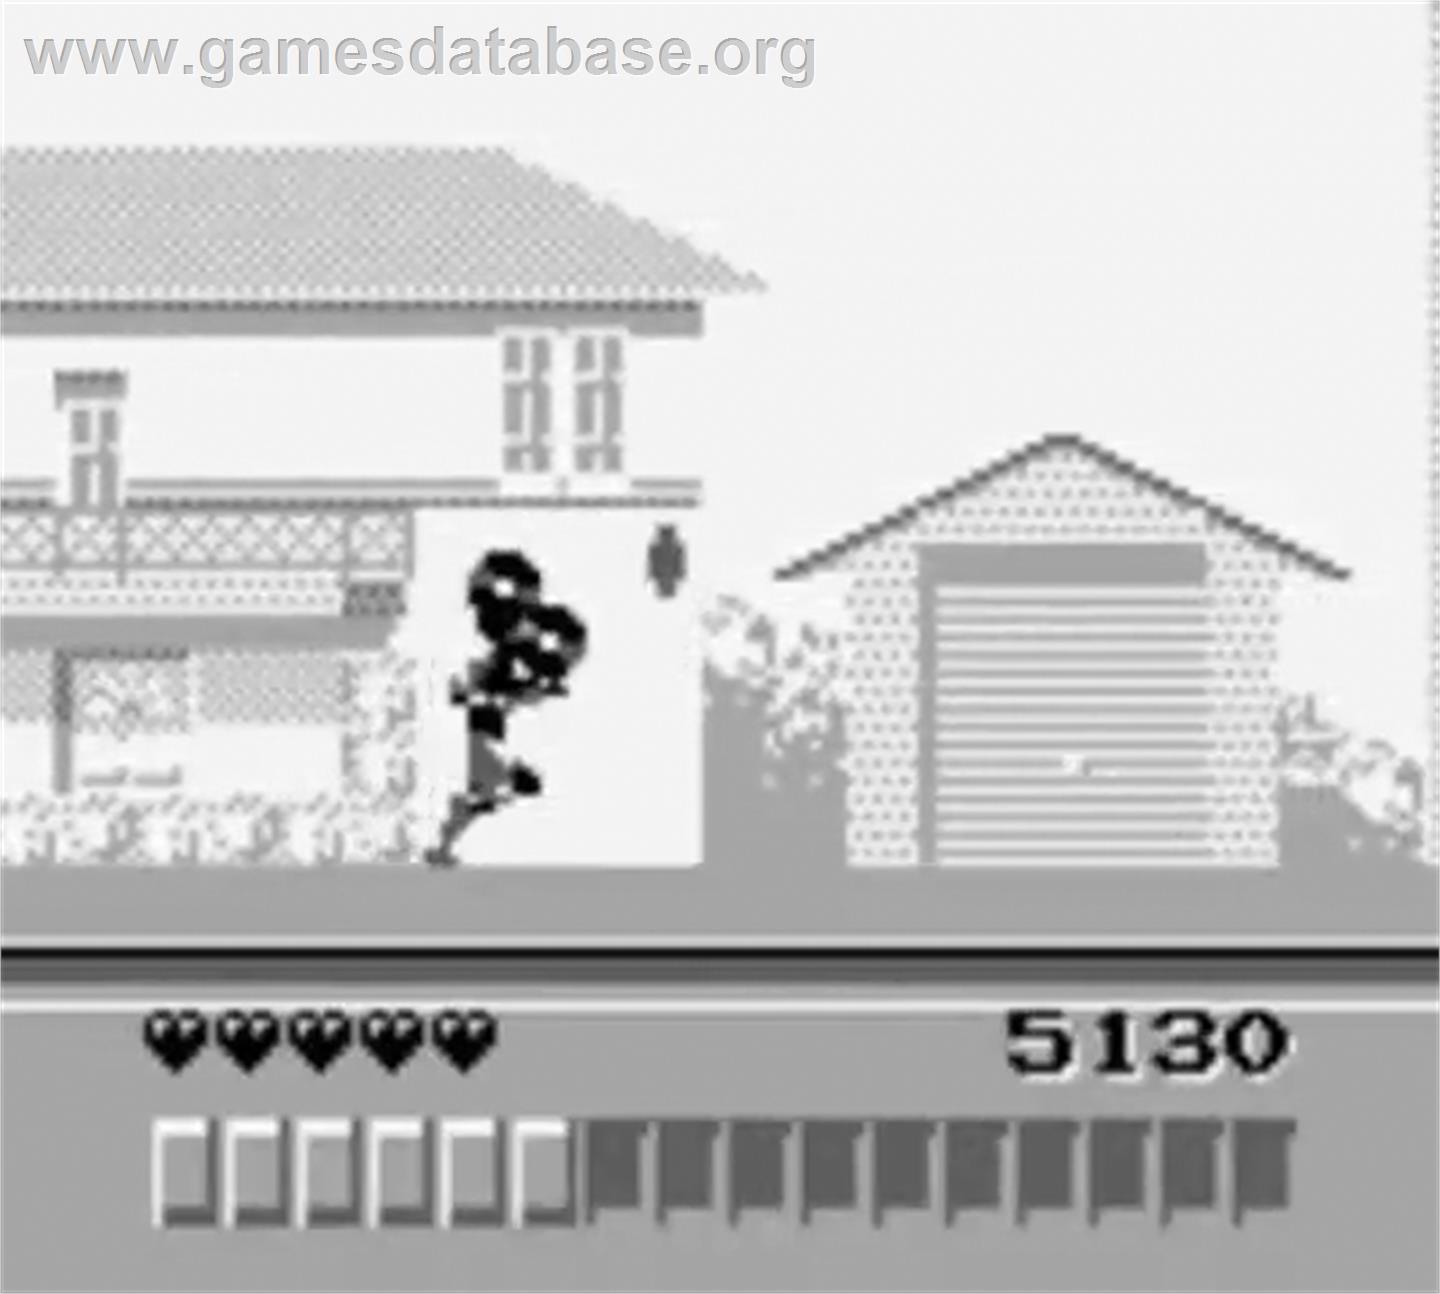 Lawnmower Man - Nintendo Game Boy - Artwork - In Game